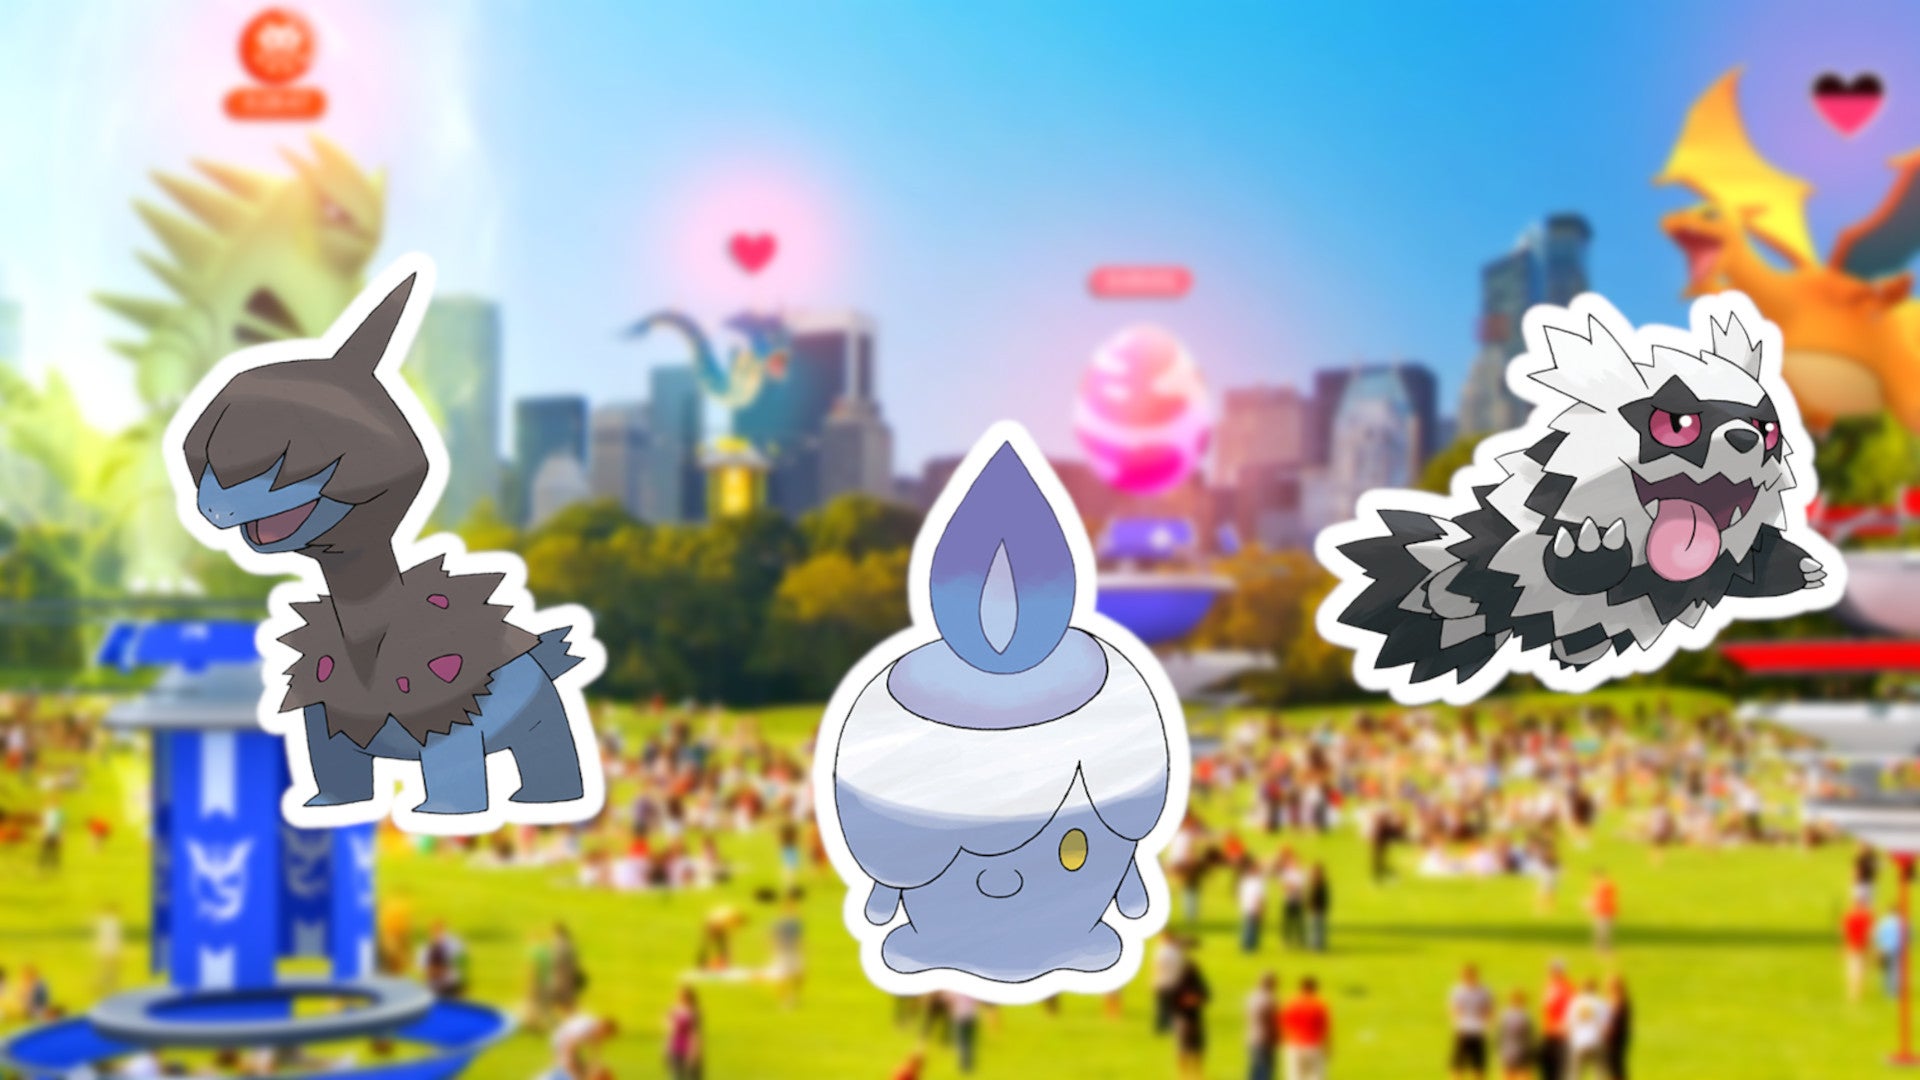 Alle Infos zum Community Day im Dezember 2022 in Pokémon Go.